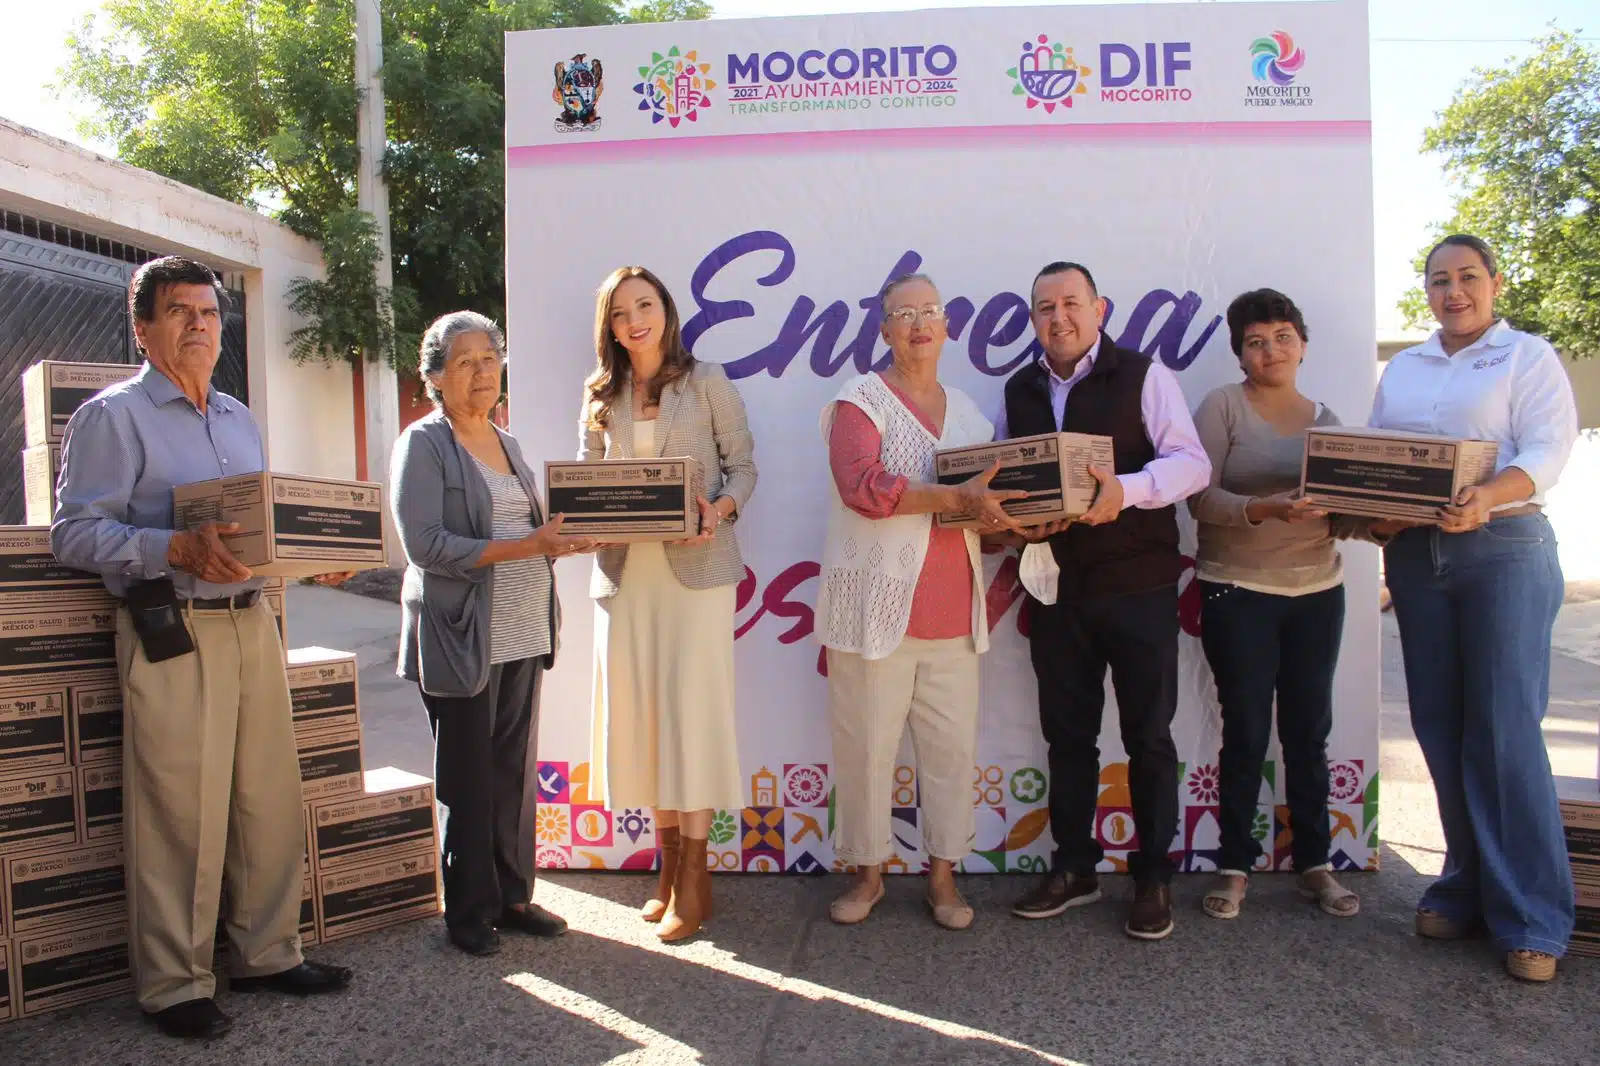 Entrega simbólica de despensas en Mocorito: se beneficiará a familias vulnerables del municipio